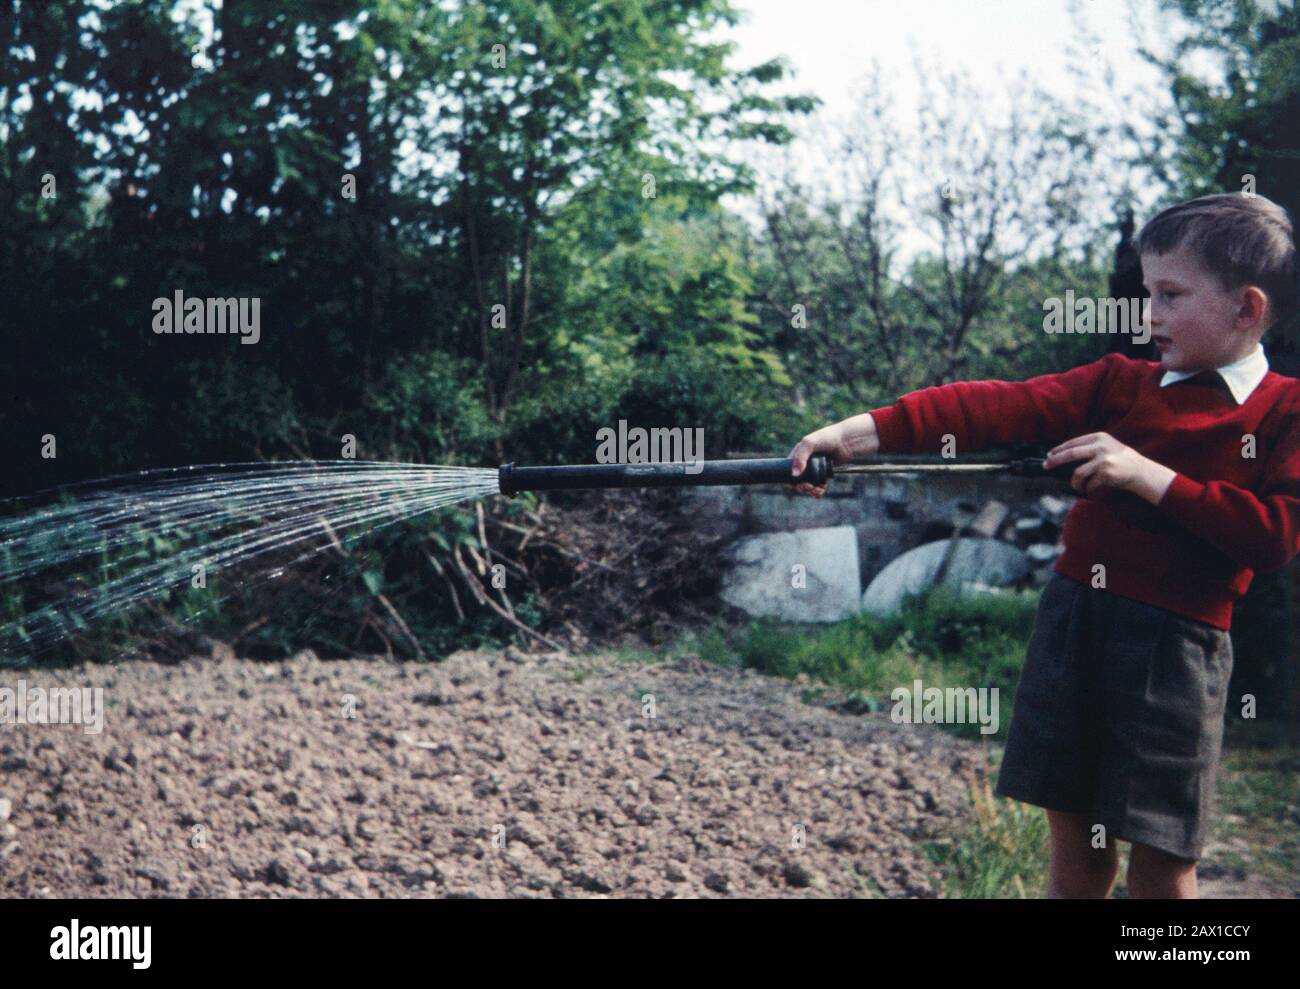 Fünf Jahre alter Junge, der 1959 eine Gartenspritze zum Wassergarten verwendet. Stockfoto